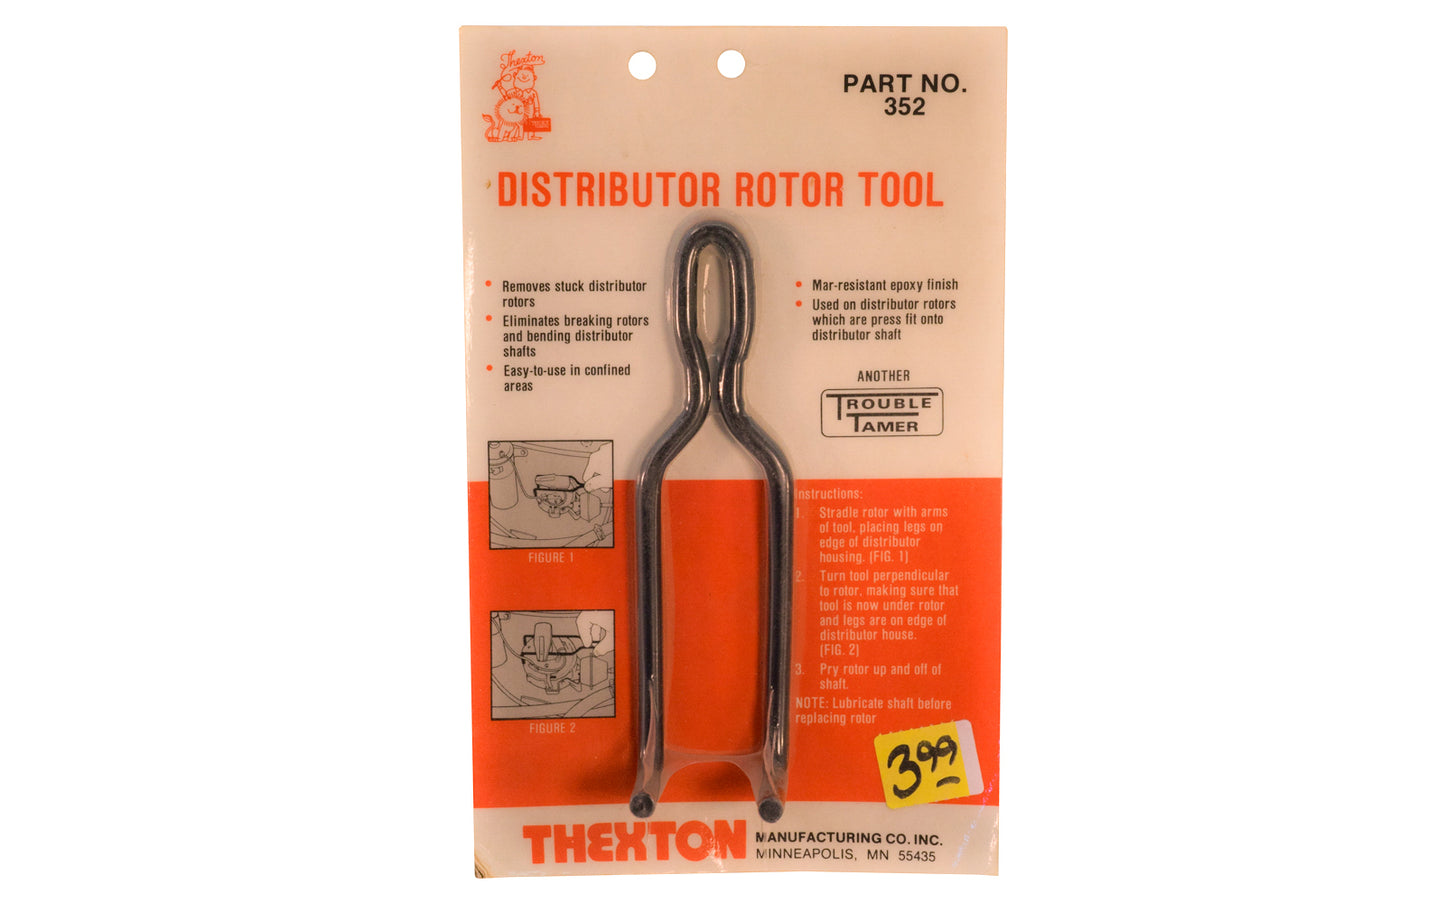 Thexton Distributor Rotor Tool.   Thexton Manufacturing Company, Minneapolis MINN. Part No. 352